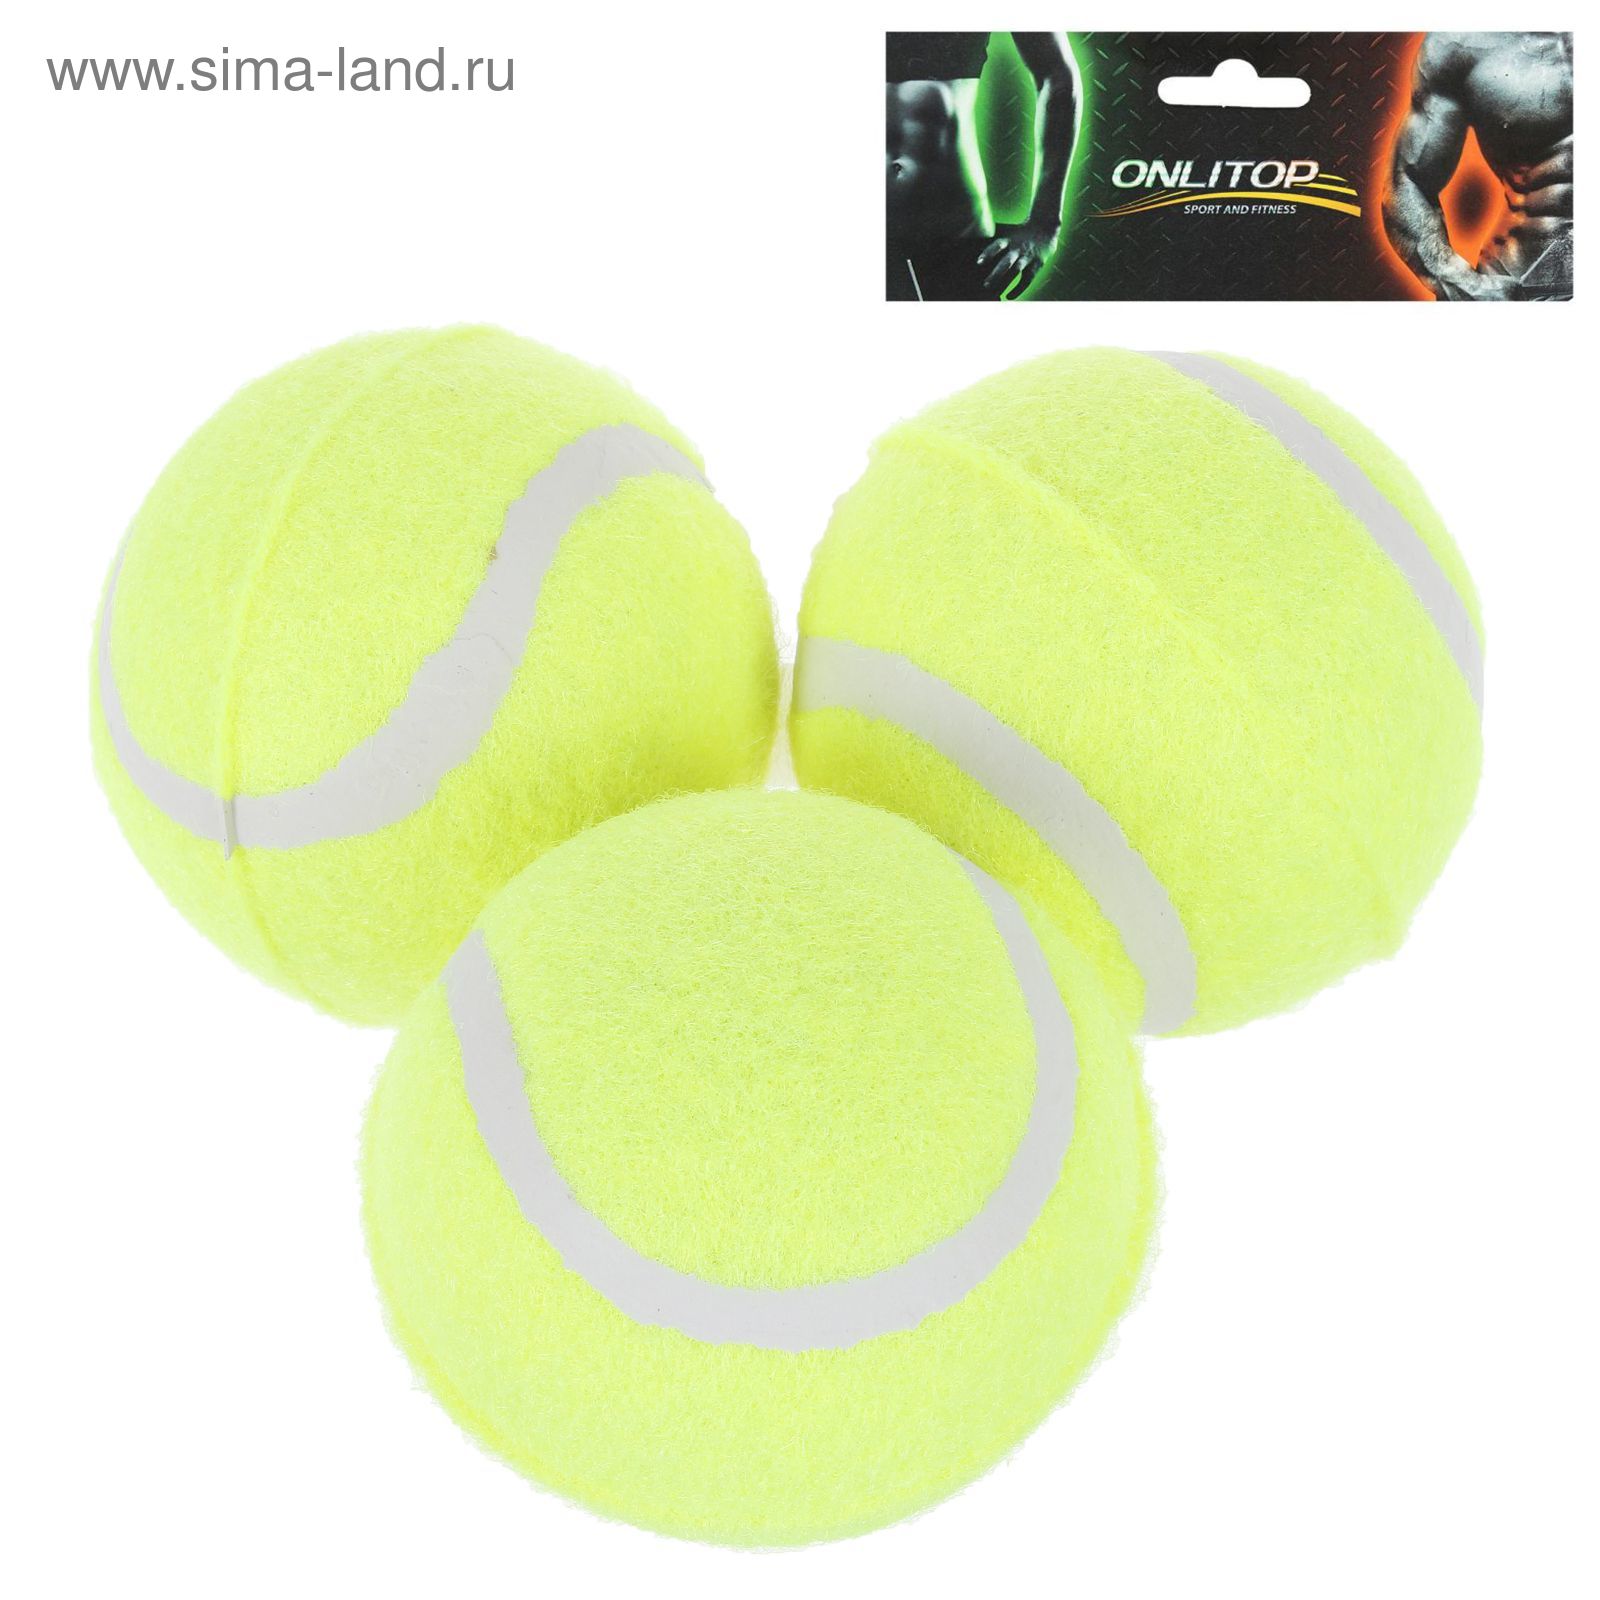 Мяч для большого тенниса, набор 3 штуки